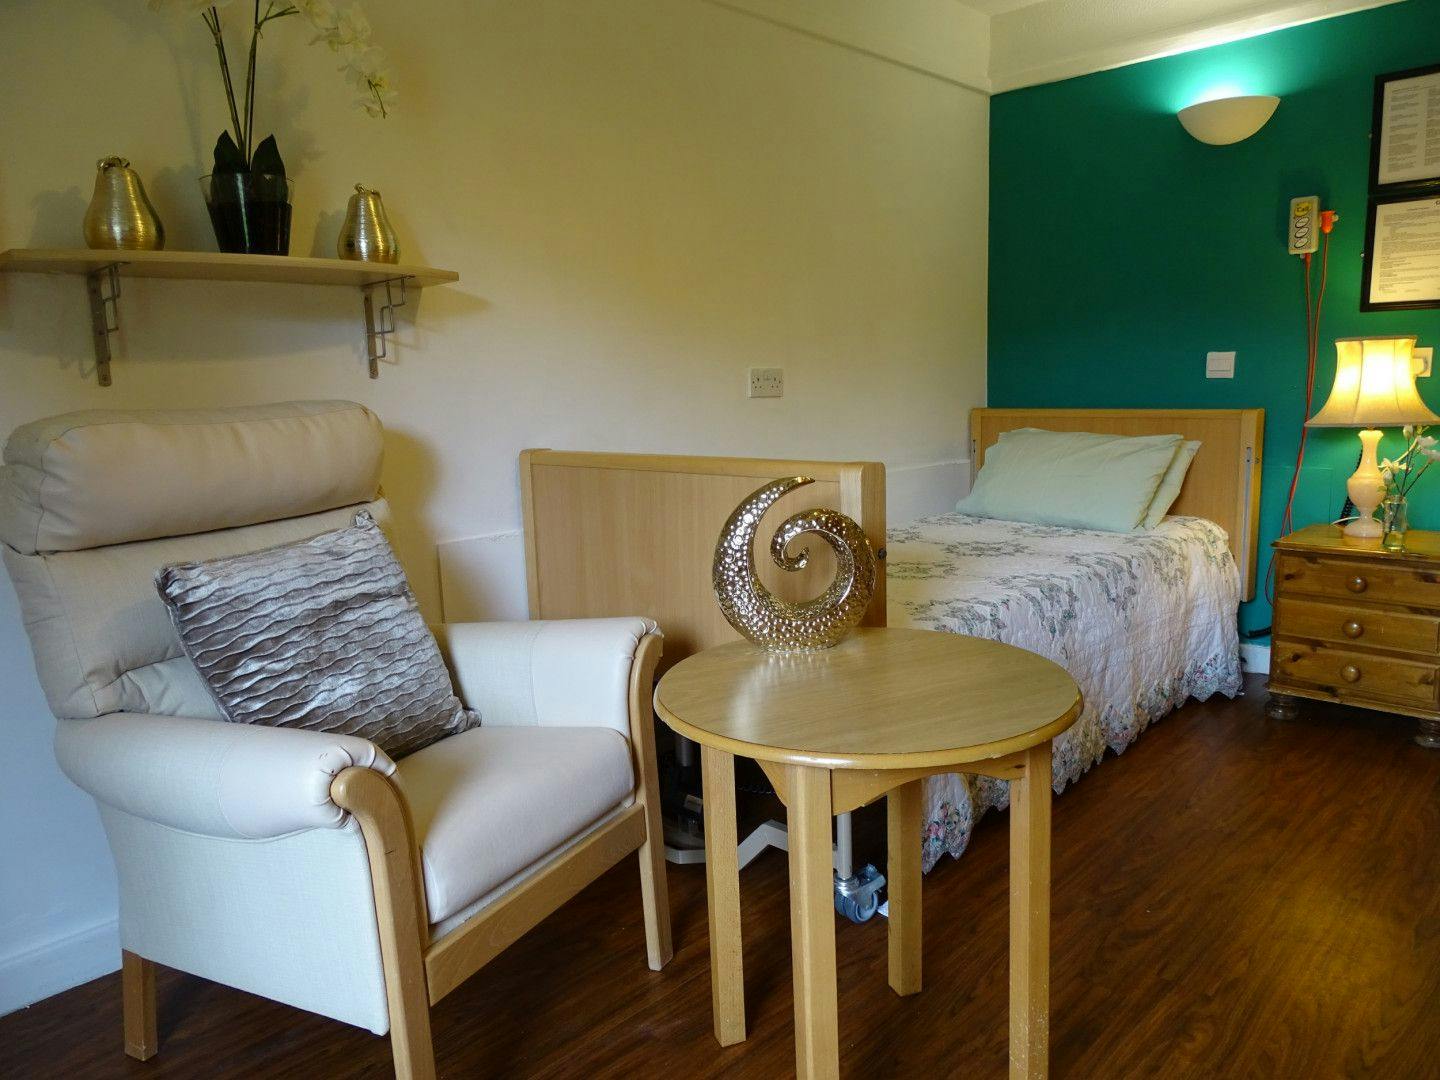 Bedroom of Echelforde care home in Ashford, Surrey